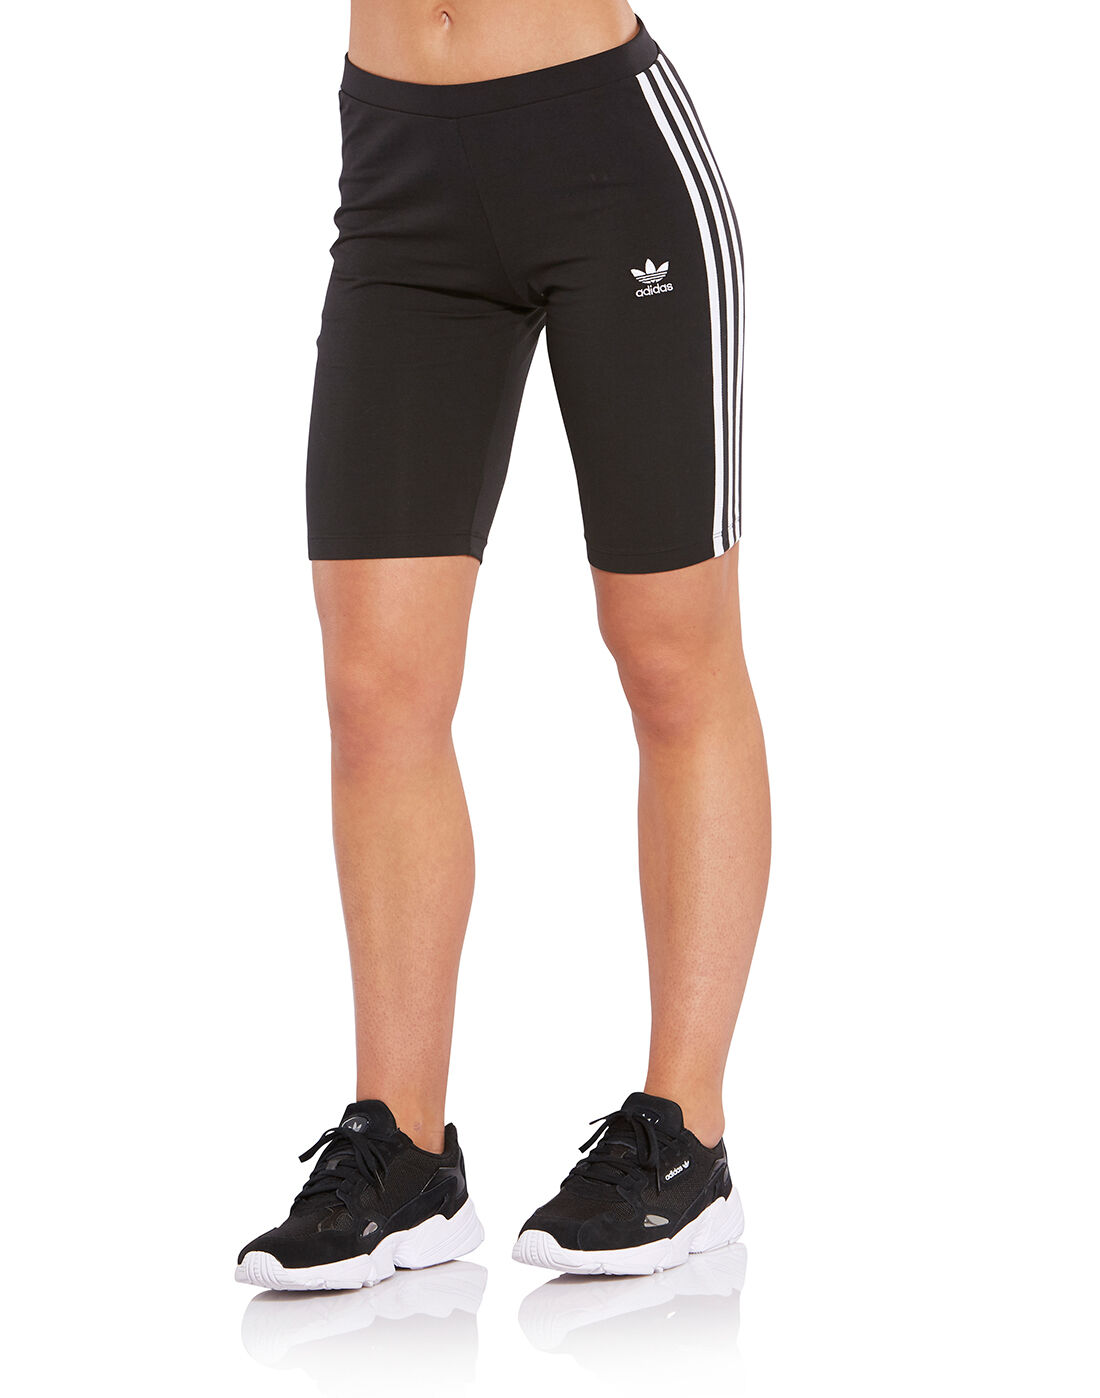 adidas cycling shorts women's